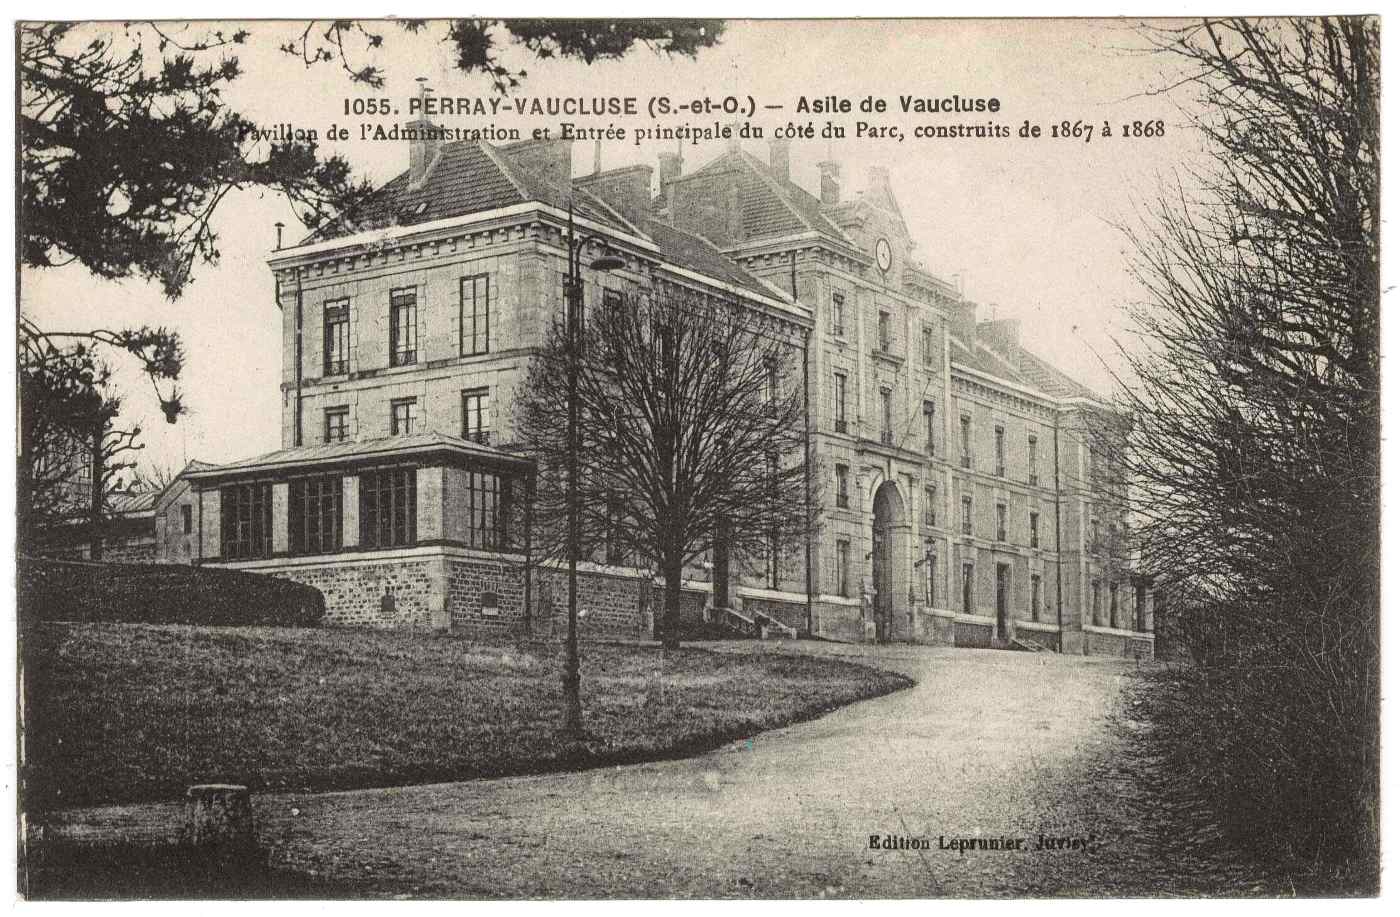 Asile Perray Vaucluse - Archives départementale de l'Essonne